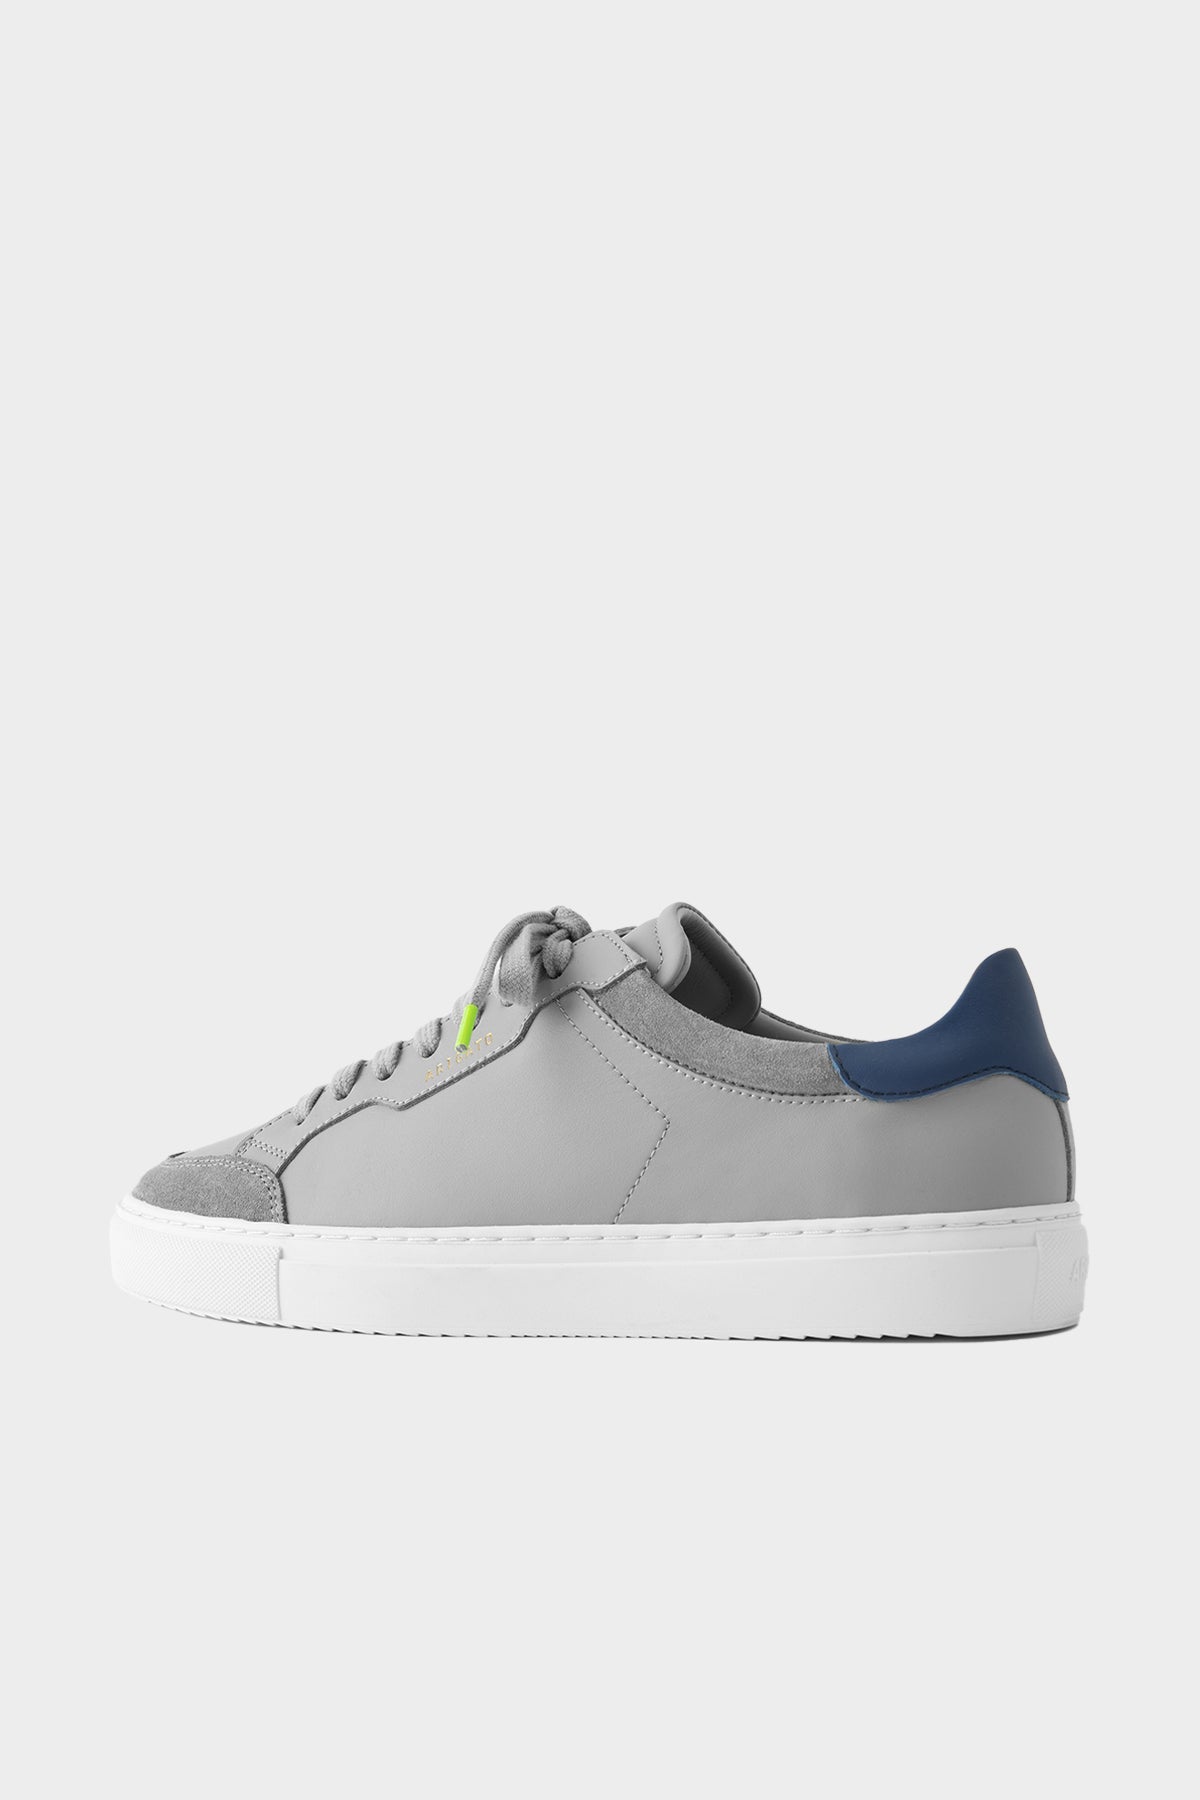 Clean 180 Men Sneaker in Grey Navy - shop-olivia.com